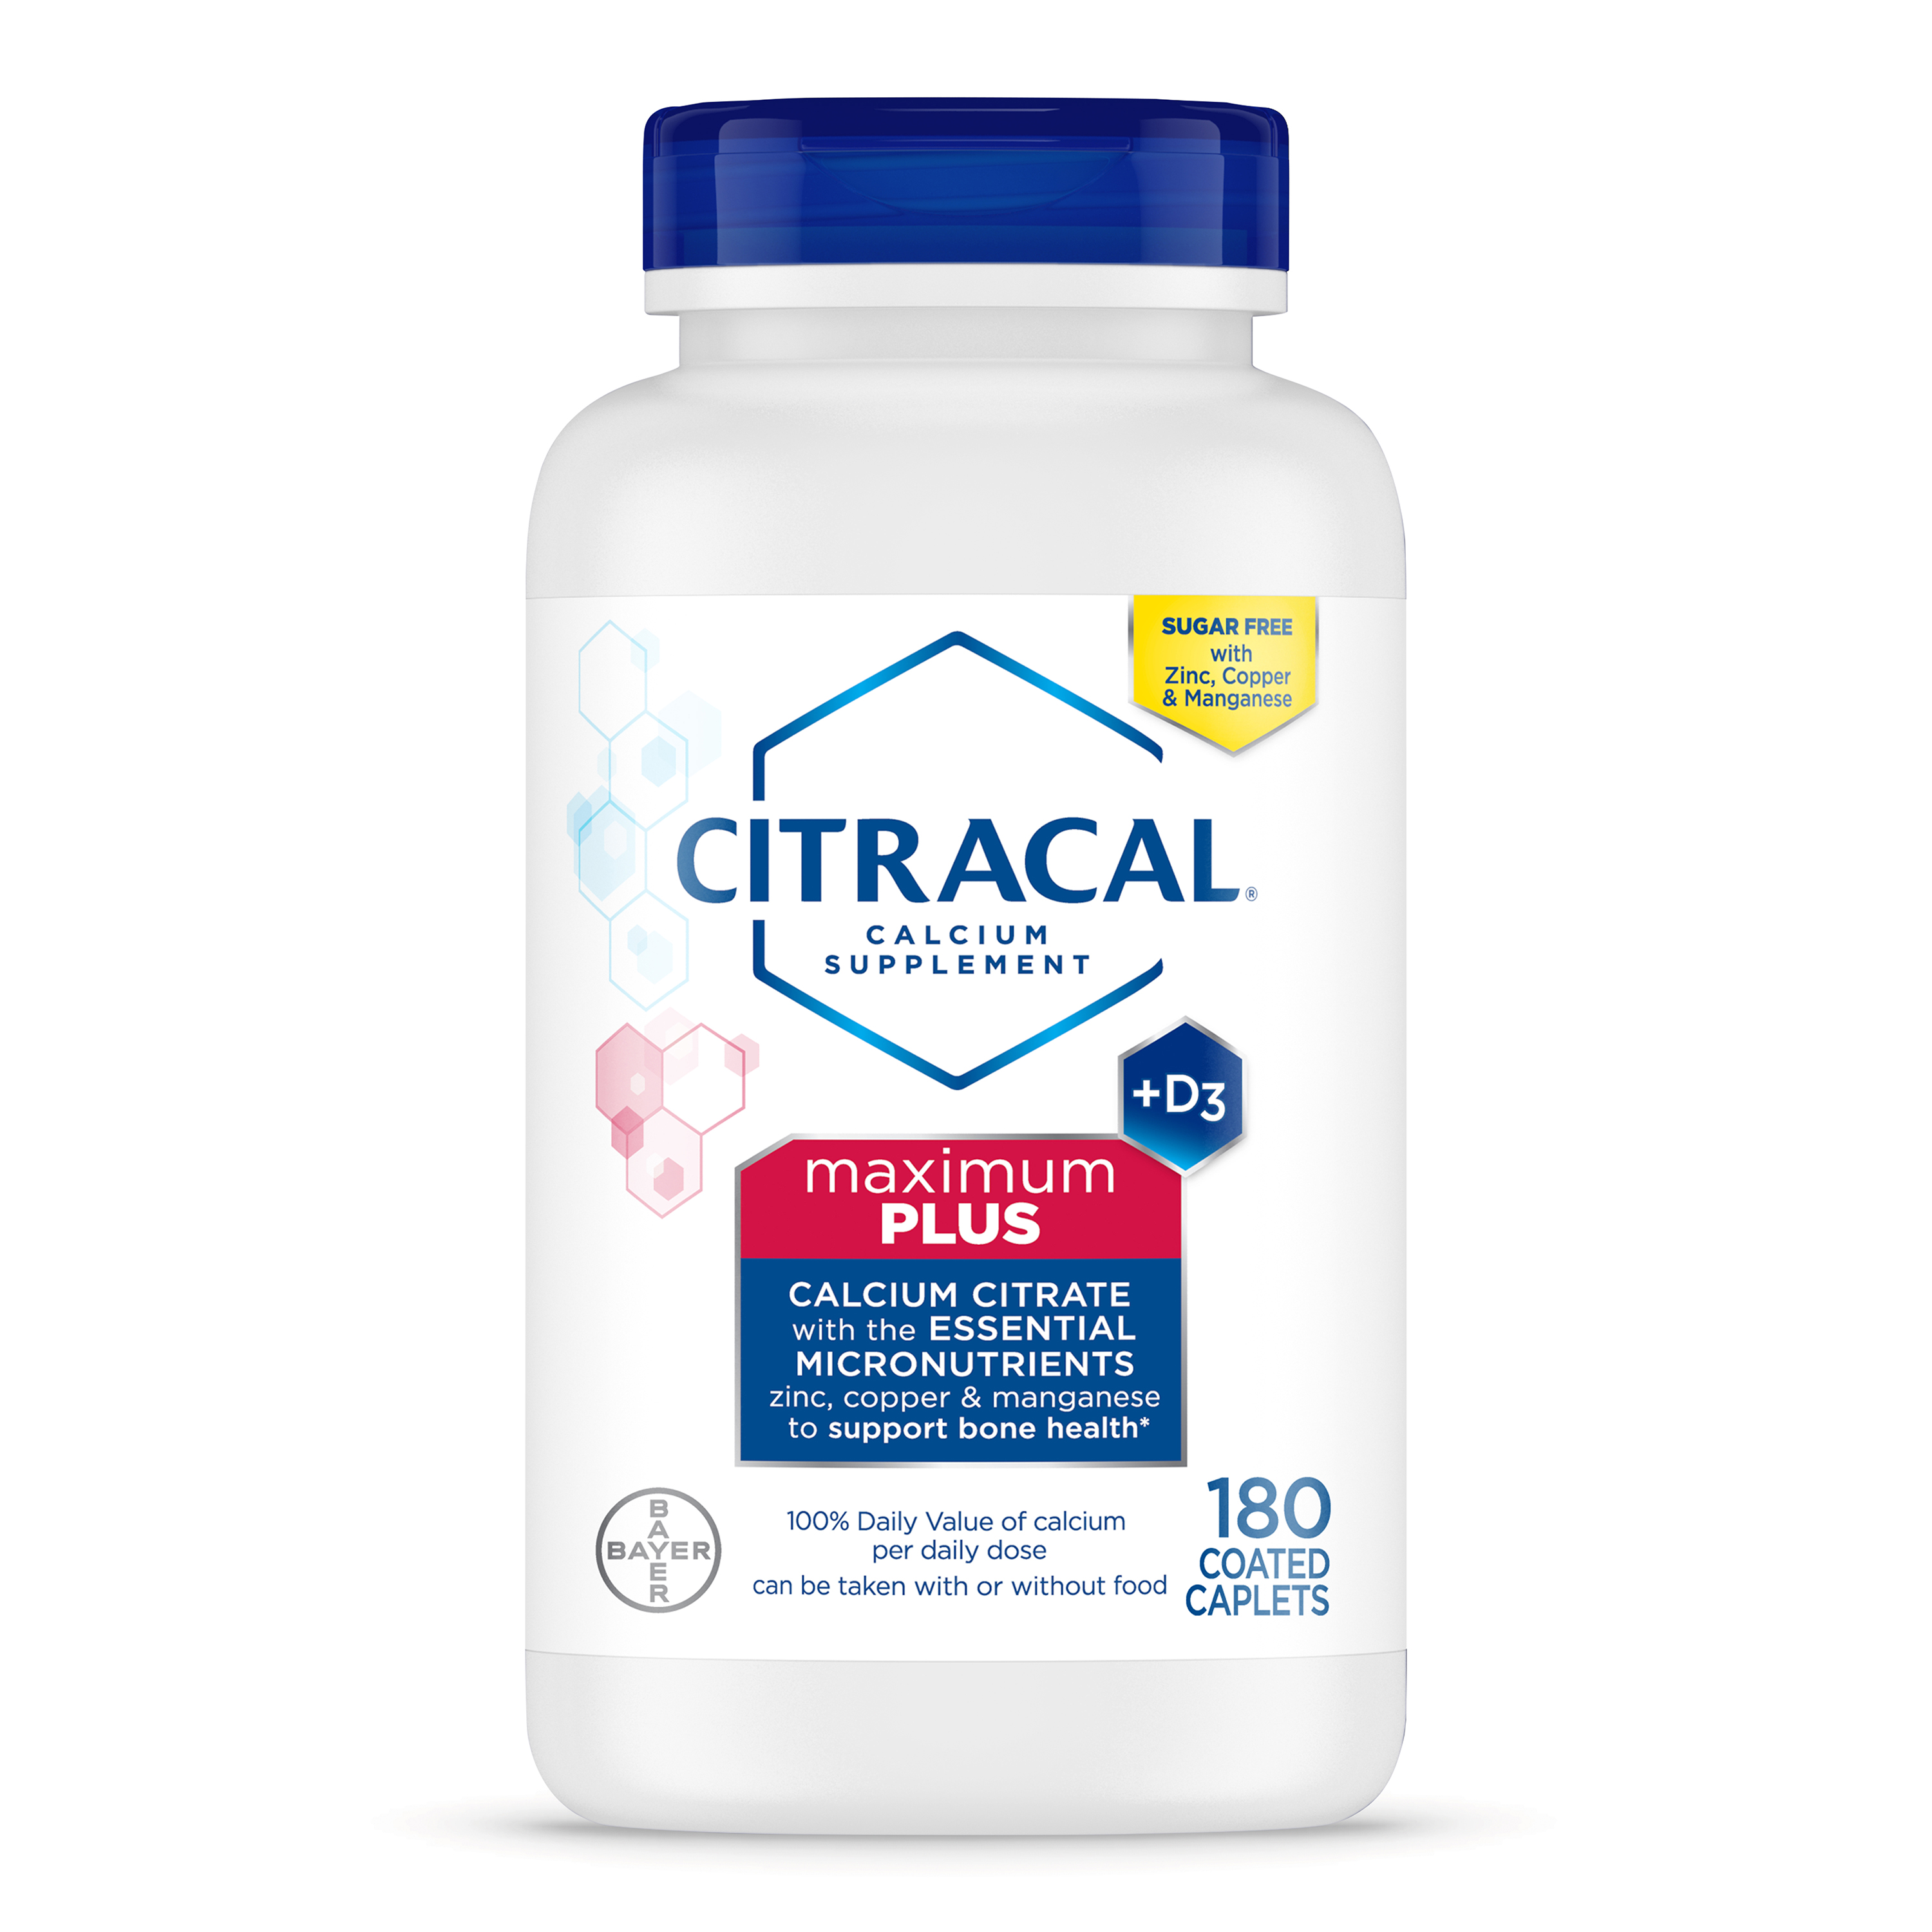 Citracal Maximum Plus Calcium Supplement, Calcium with Vitamin D3, Coated Caplets, 180 Count - image 1 of 8